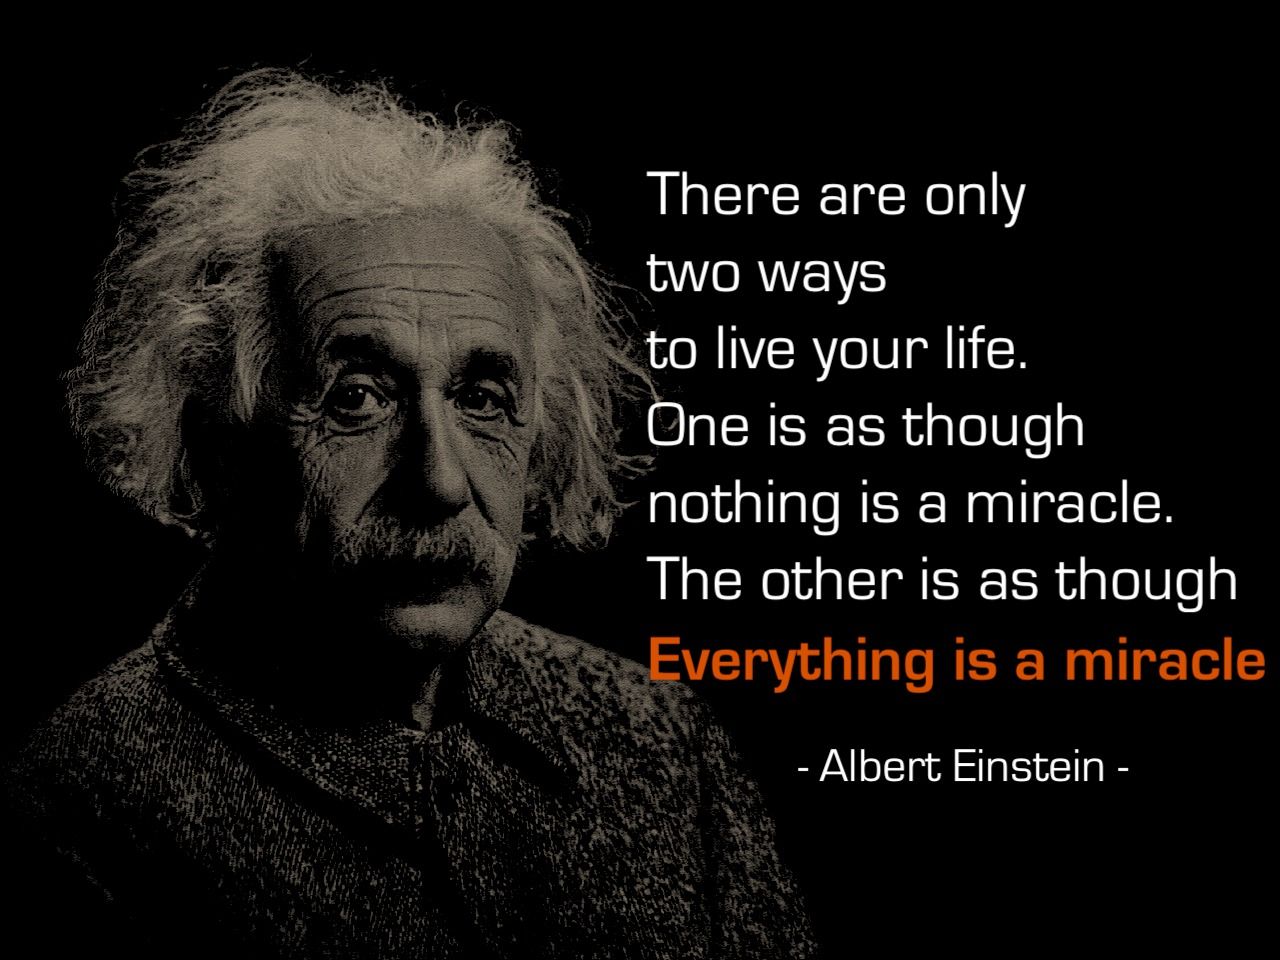 Spiritual Inspiration from Albert Einstein